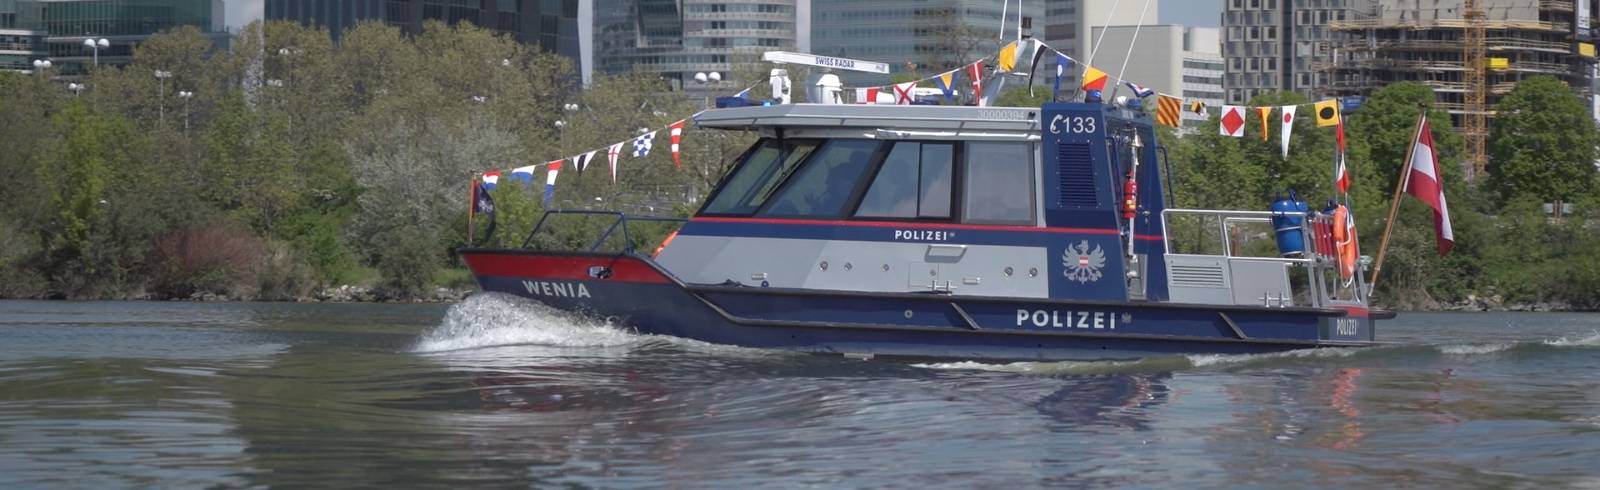 Neues Polizeiboot auf Namen "Wenia" getauft